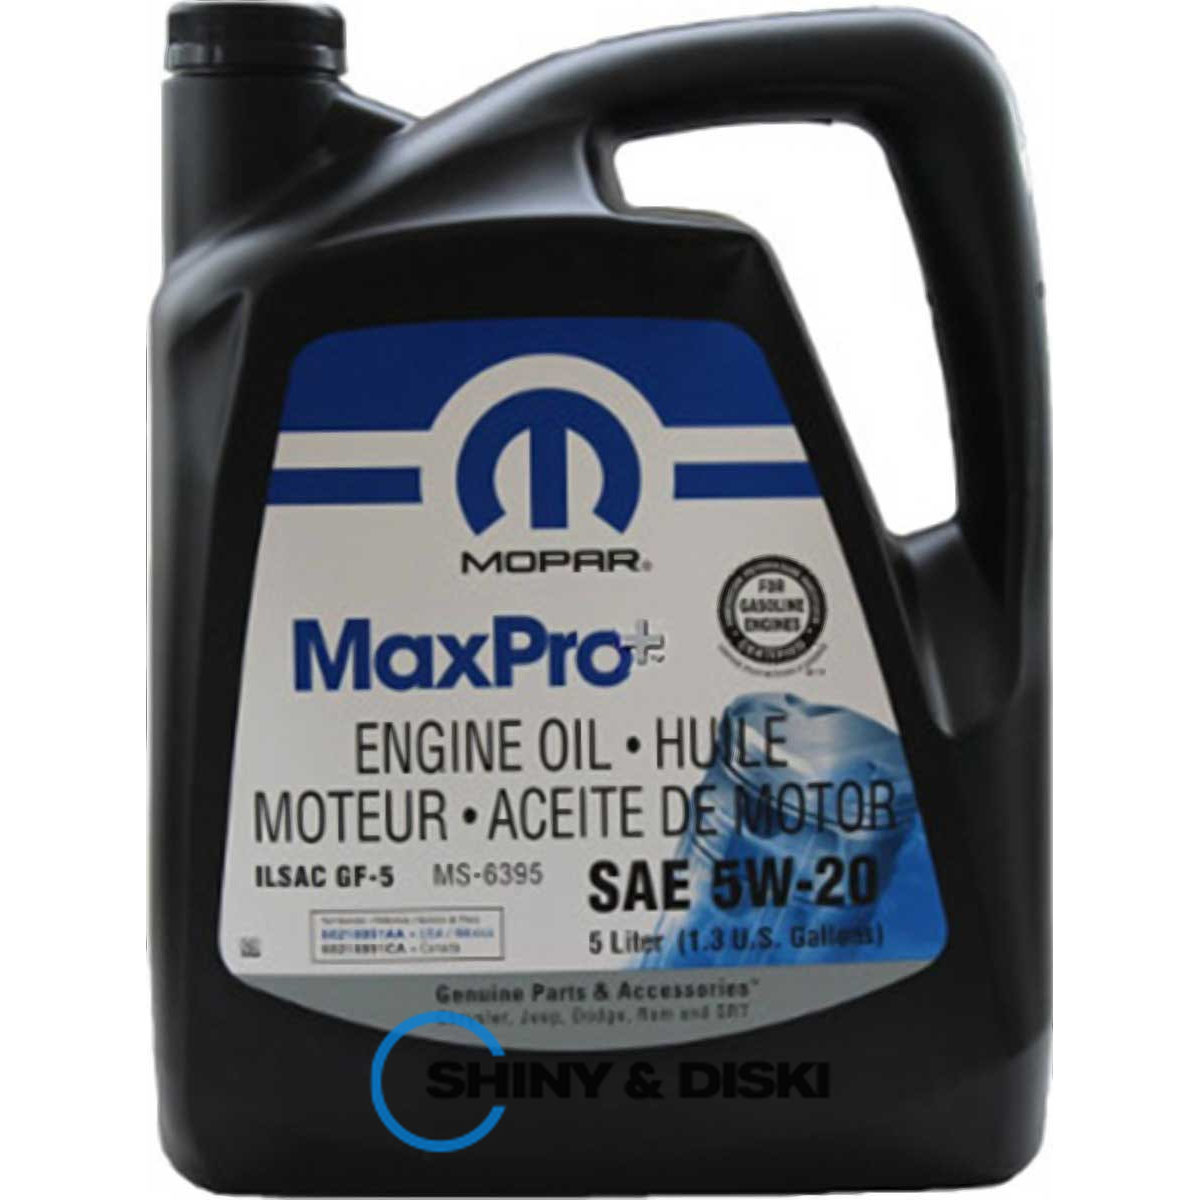 mopar maxpro+ engine oil